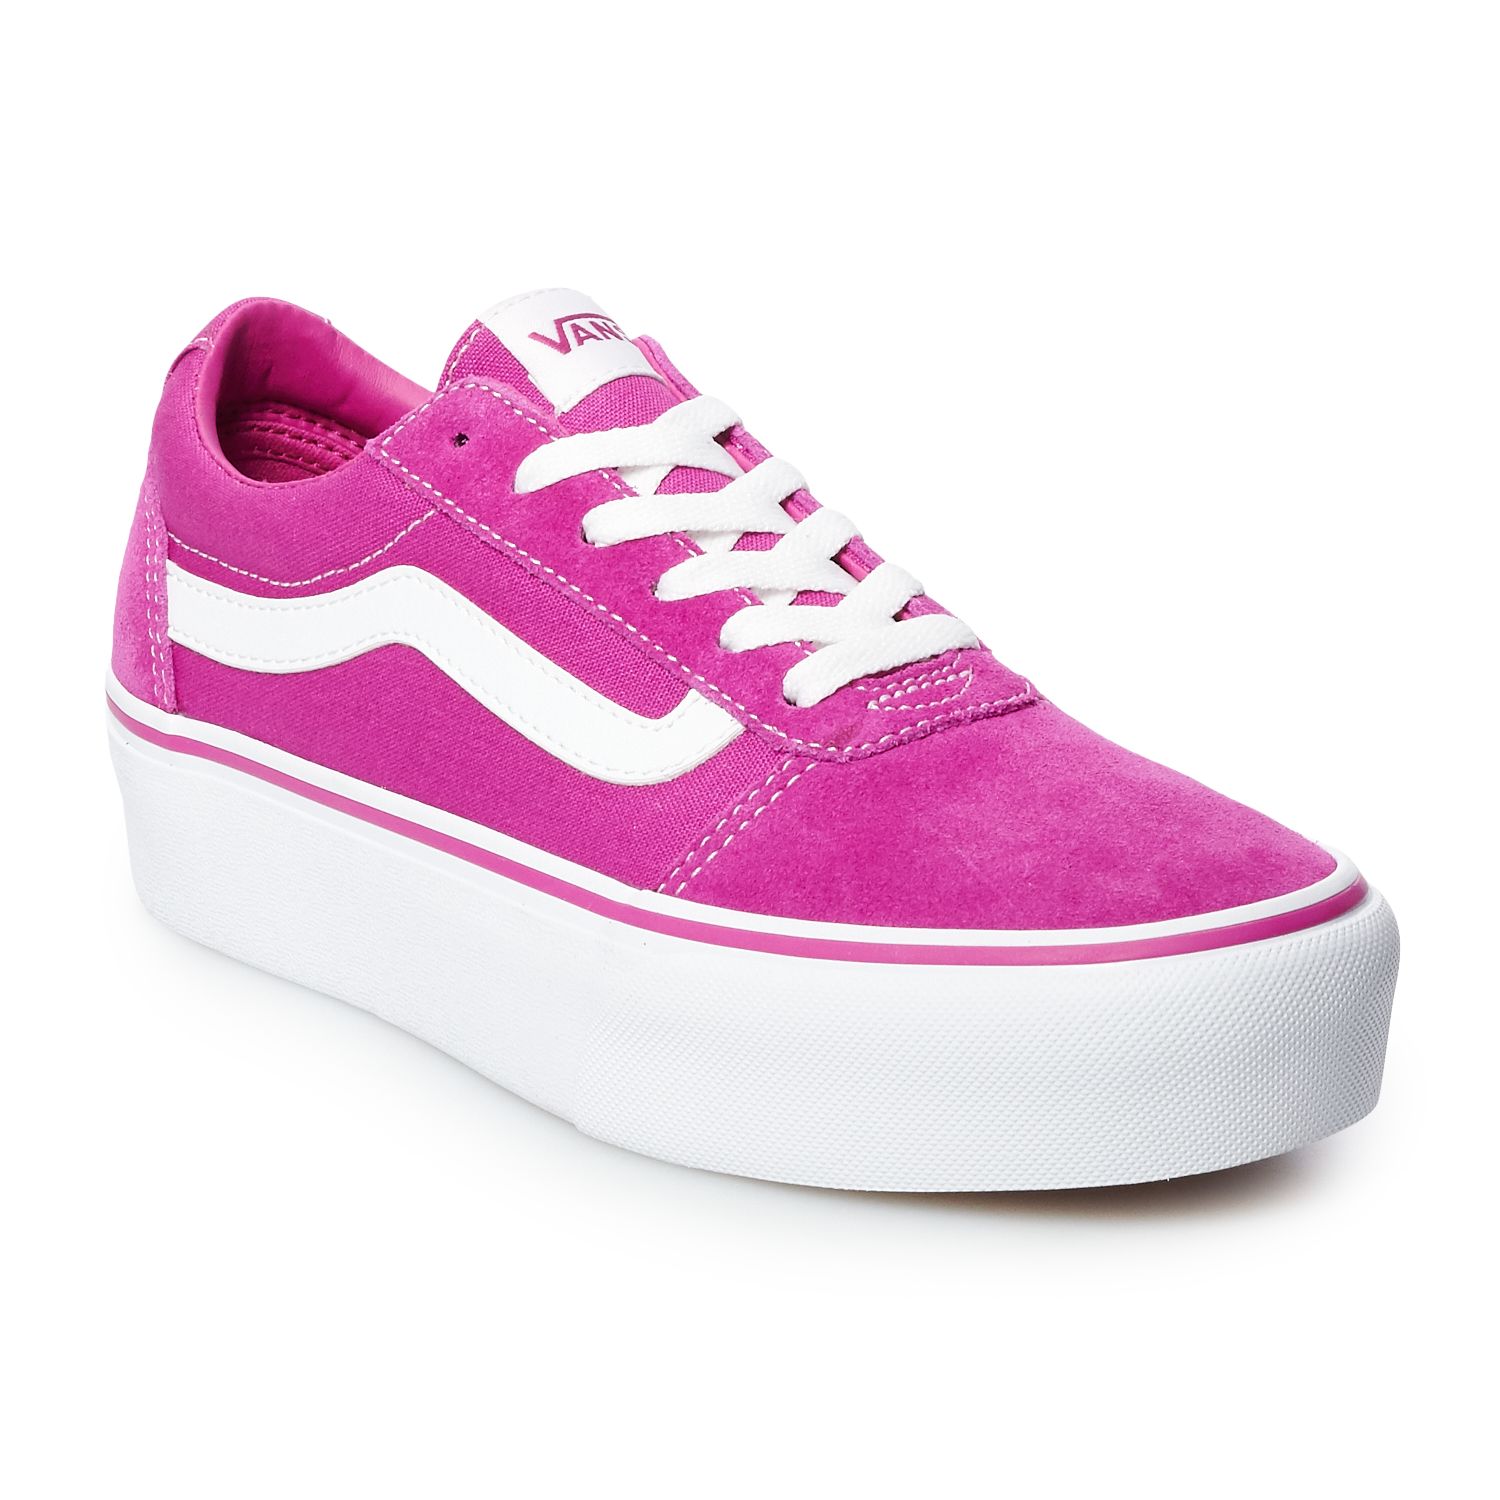 Vans Ward Women's Platform Skate Shoes, Size: 9.5, Med Red | eBay Red Vans Shoes For Girls